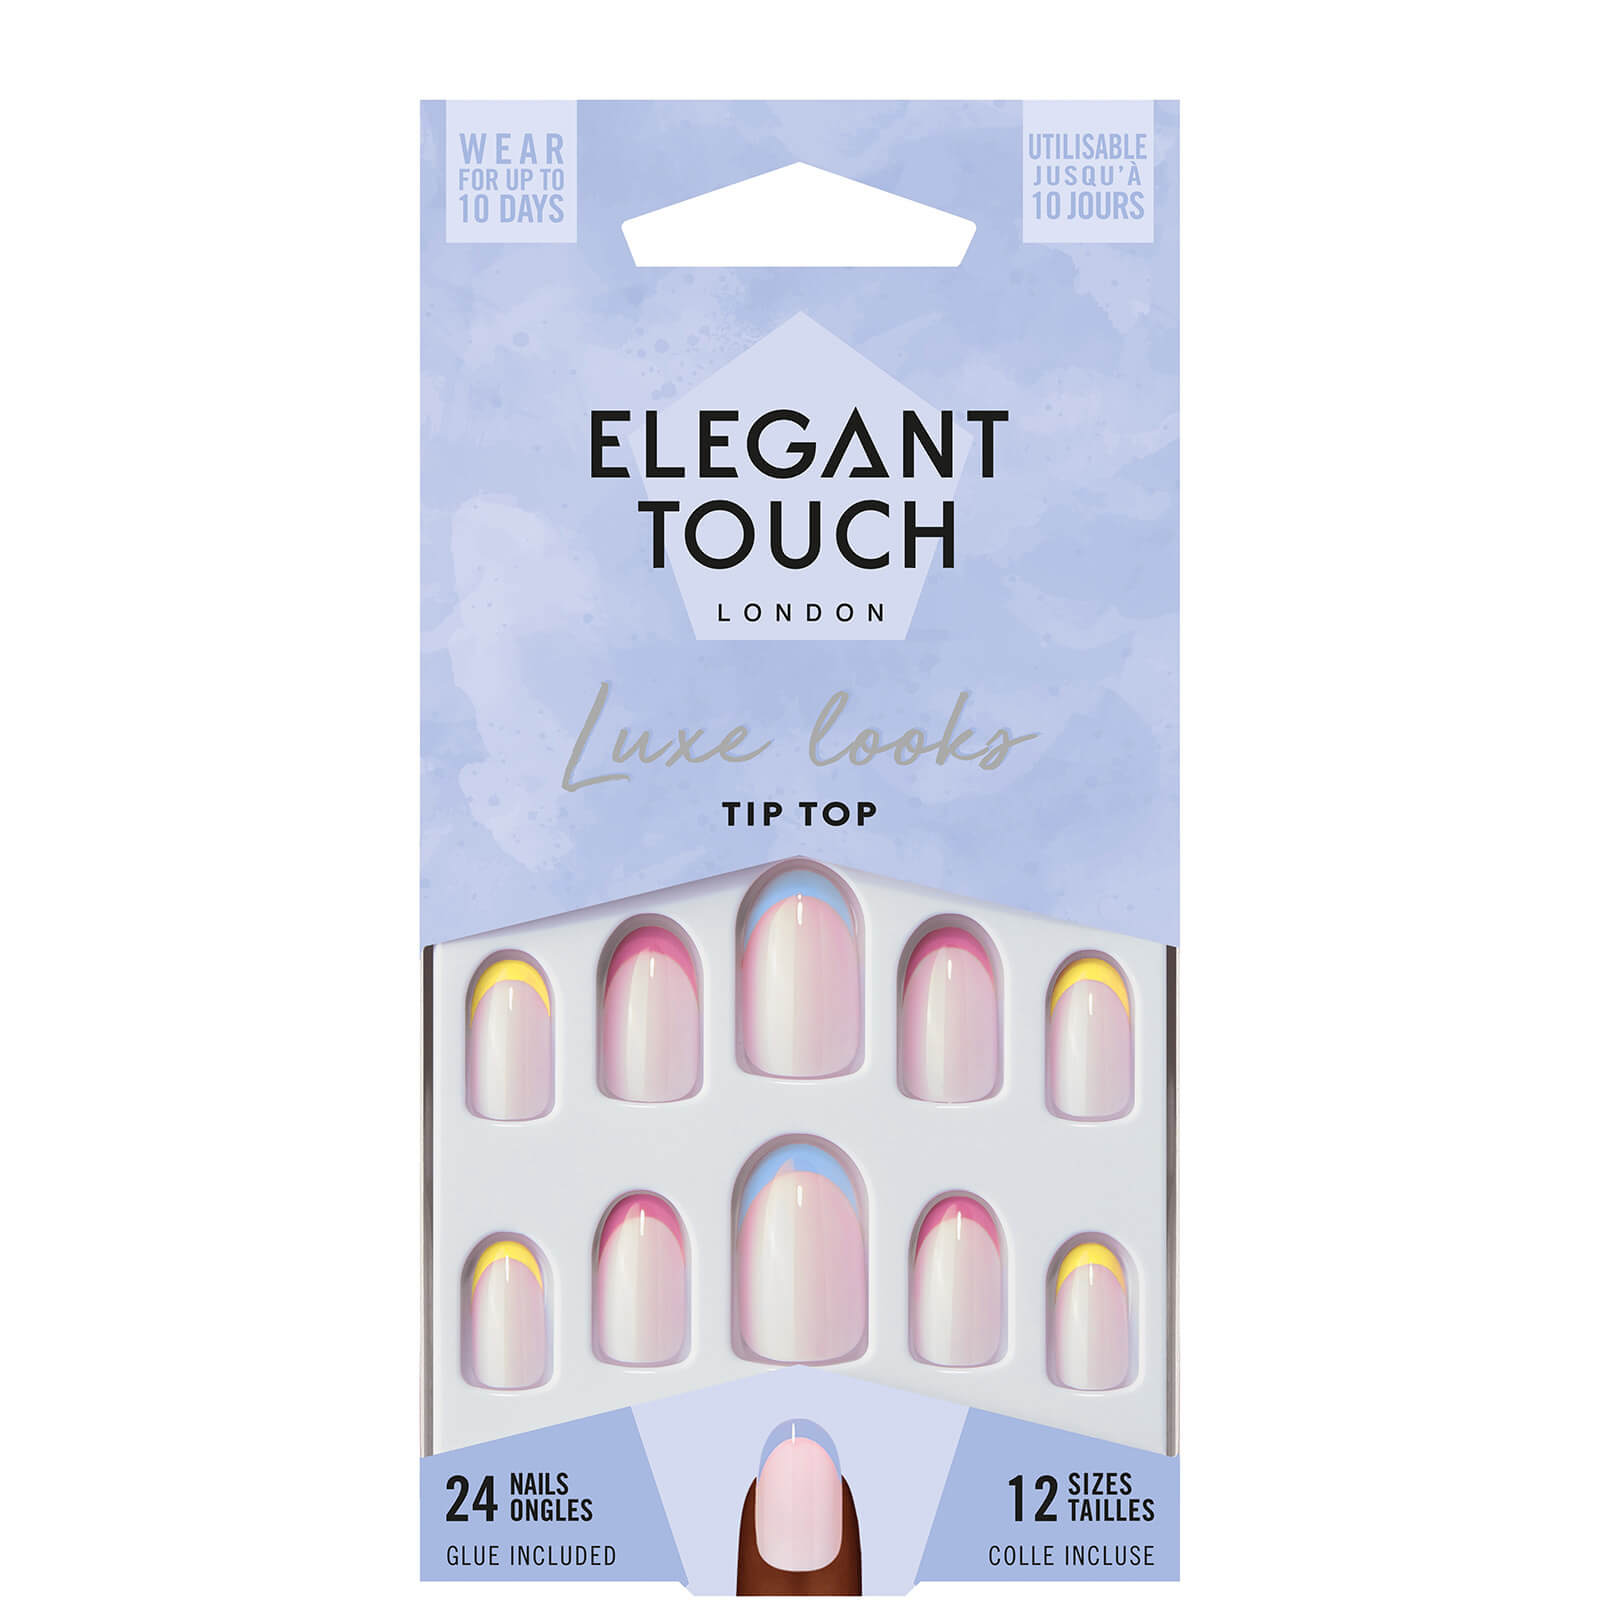 Elegant Touch False Nails – Tip Top lookfantastic.com imagine